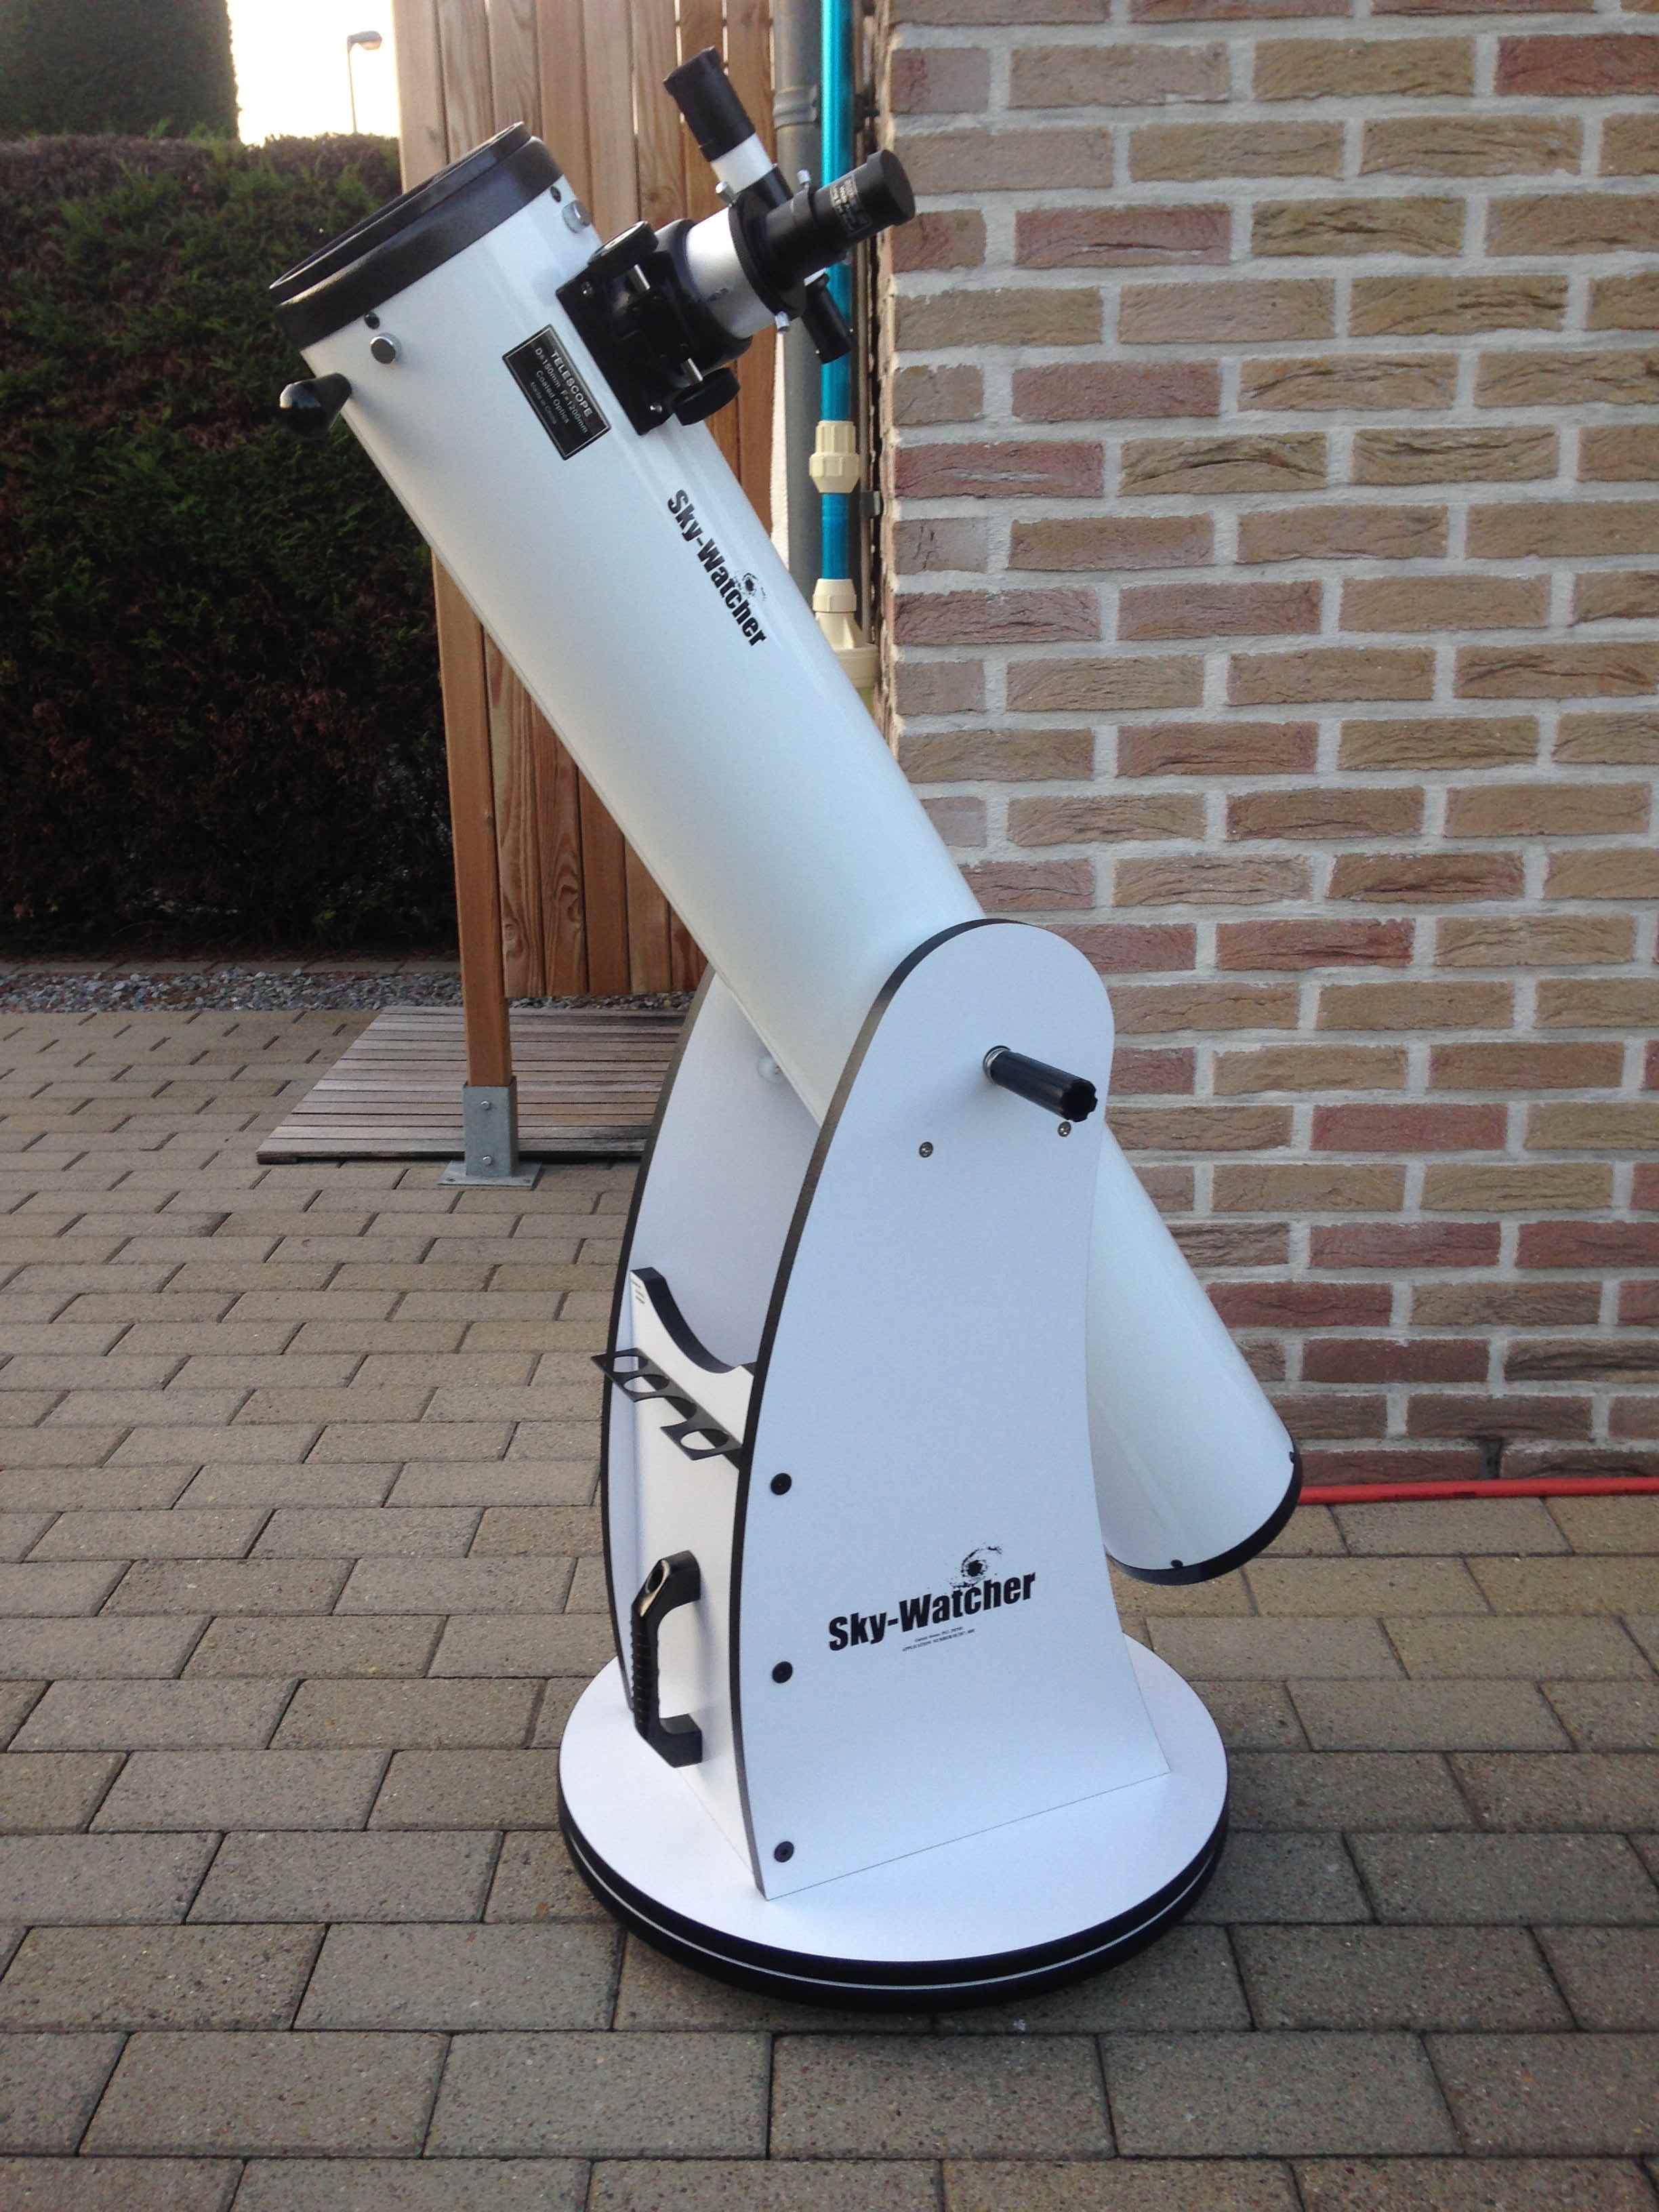 waarom niet Geweldig Socialisme Astroforum.be on Twitter: "Telescoop te koop Skywatcher Dobson 150mm/1200mm  (regio Limburg) https://t.co/J5stnLcYWk #astronomie #sterrenkunde  #astrofotografie https://t.co/bKgZ46jca7" / Twitter